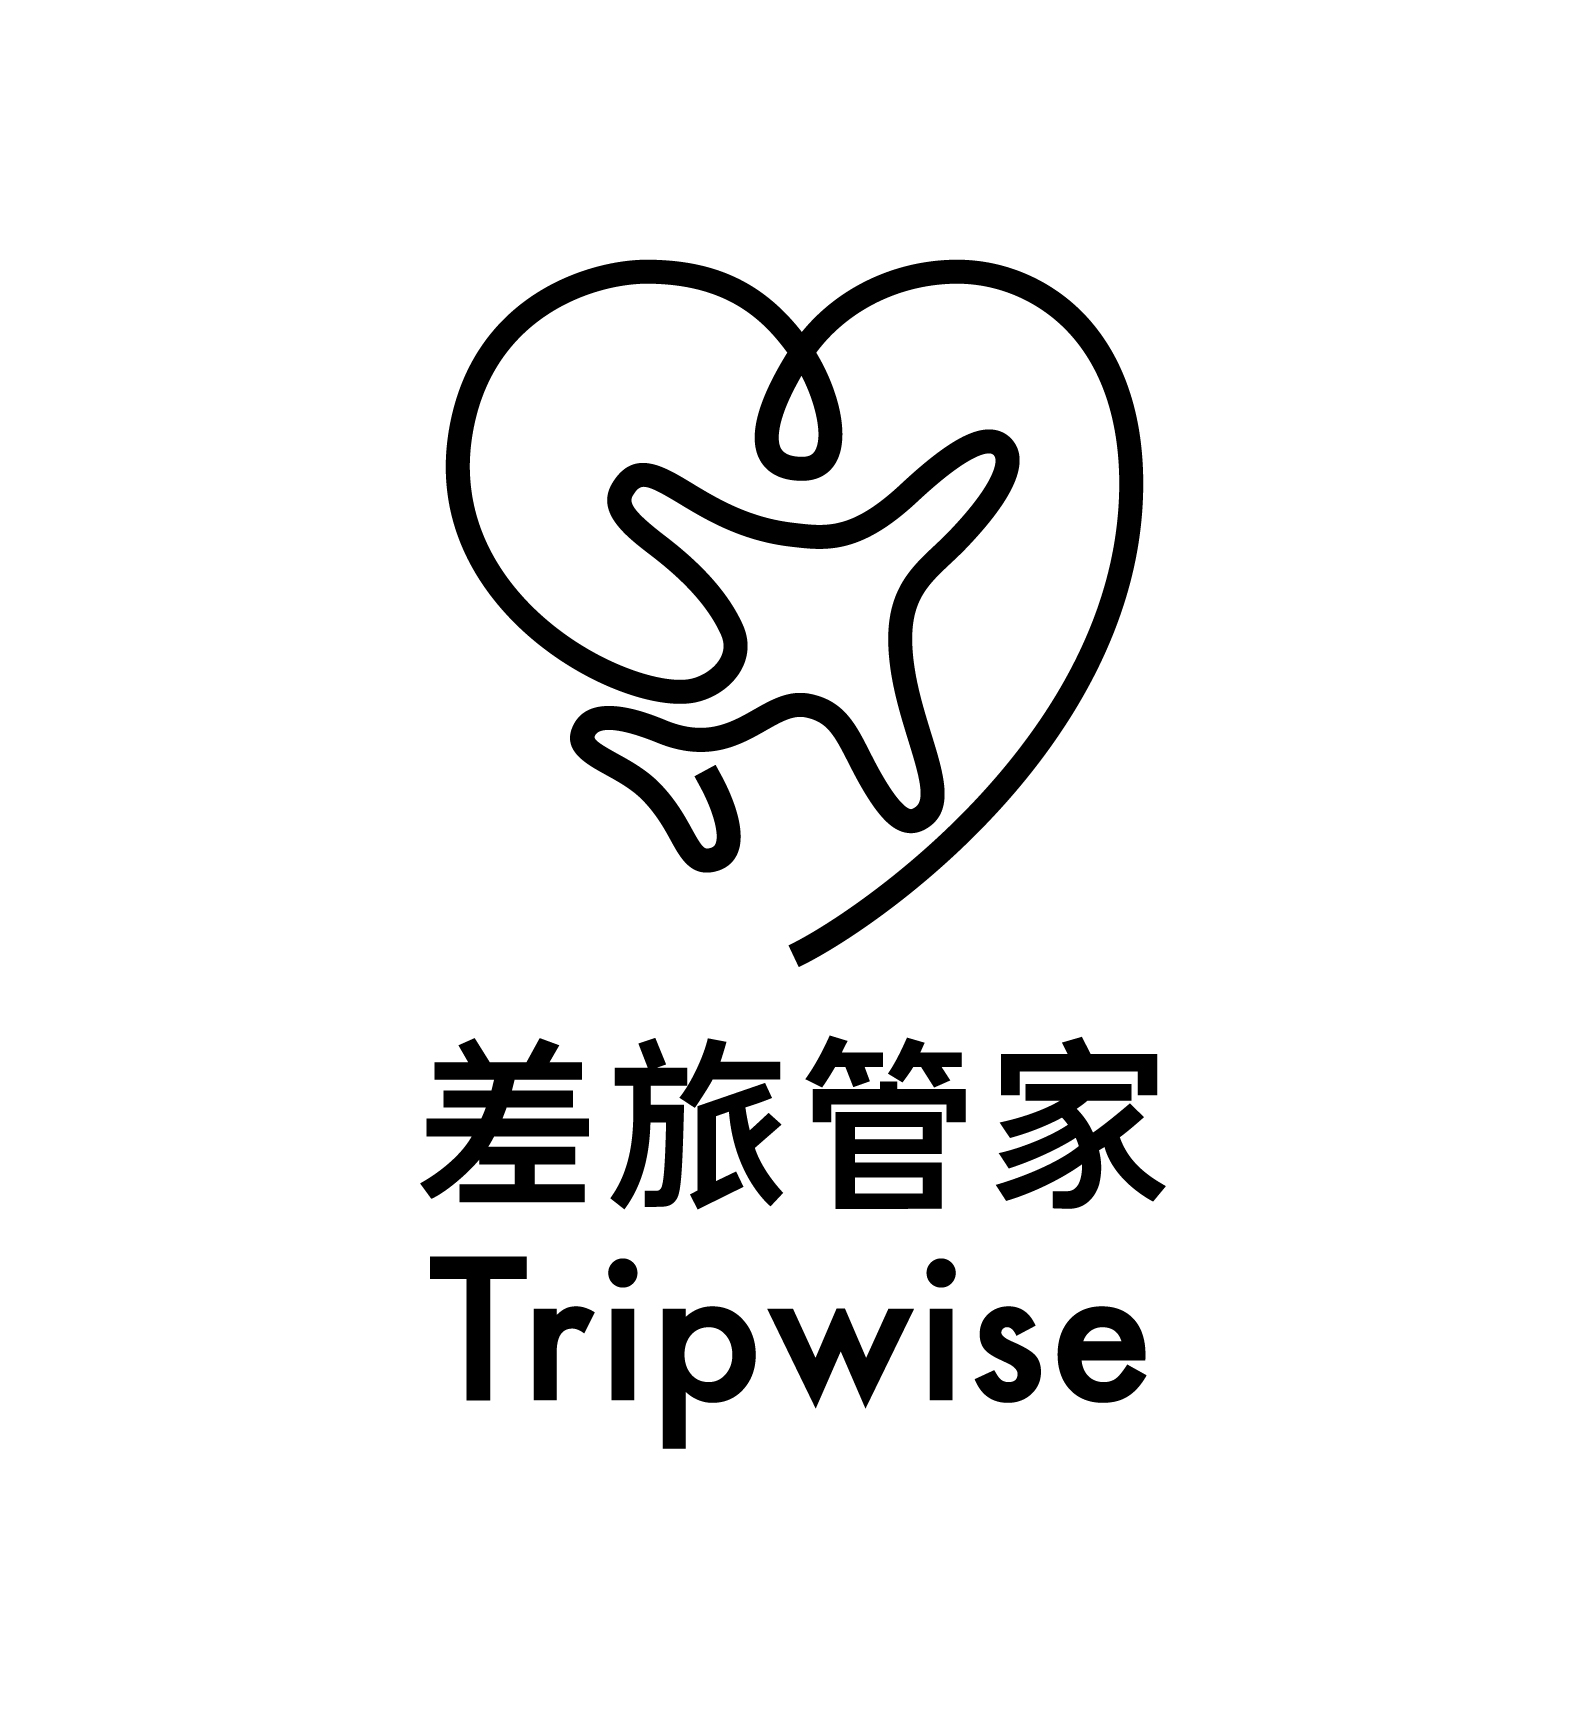 TripWise, 2020